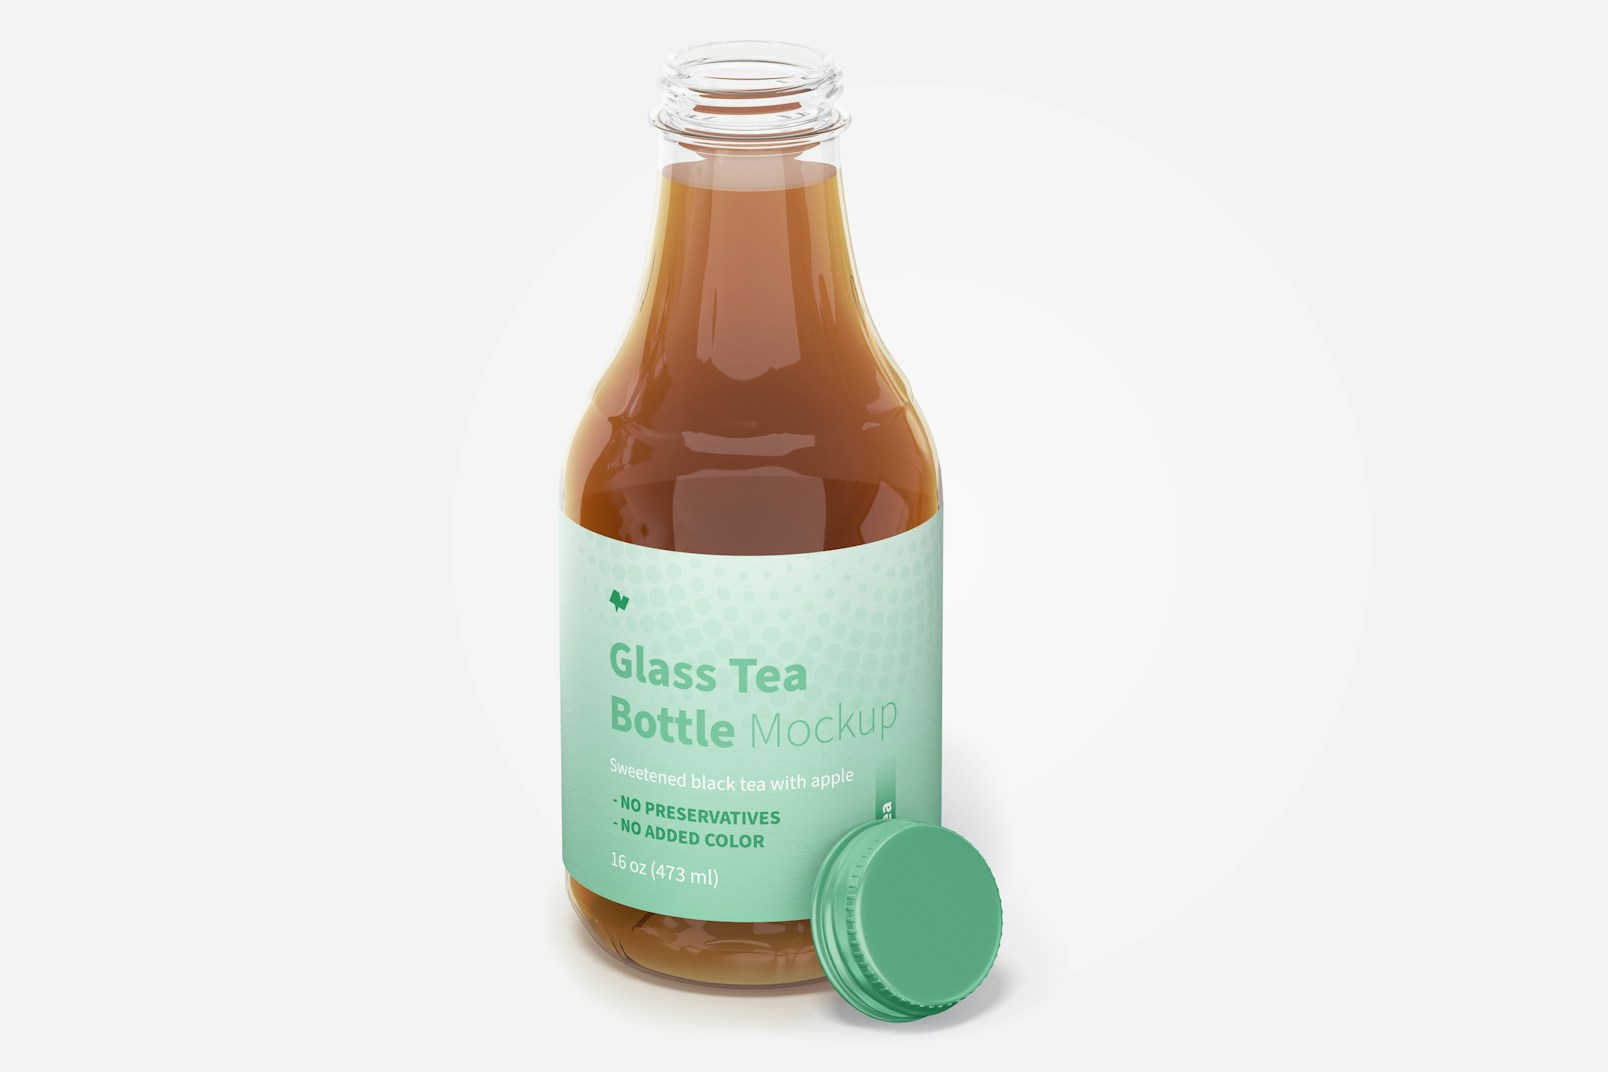 16 oz Glass Tea Bottle Mockup, Opened